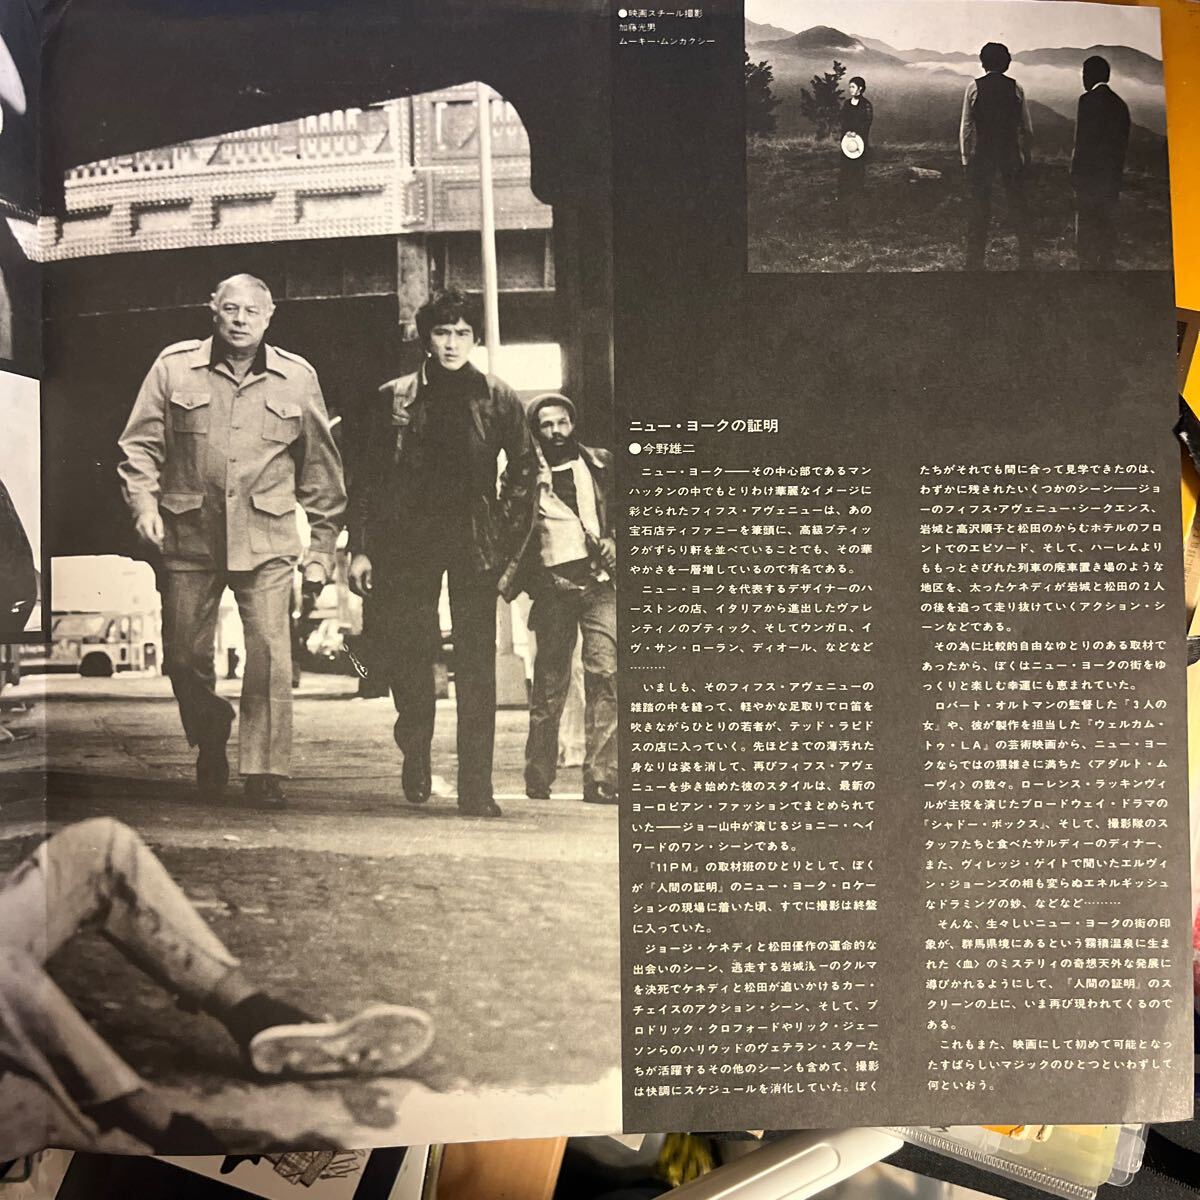 1977 год произведение человек. подтверждение саундтрек Matsuda Yusaku Joe гора средний скала замок . один стоимость товар inter re стойка ng красивый . произведение бесплатная доставка ..~